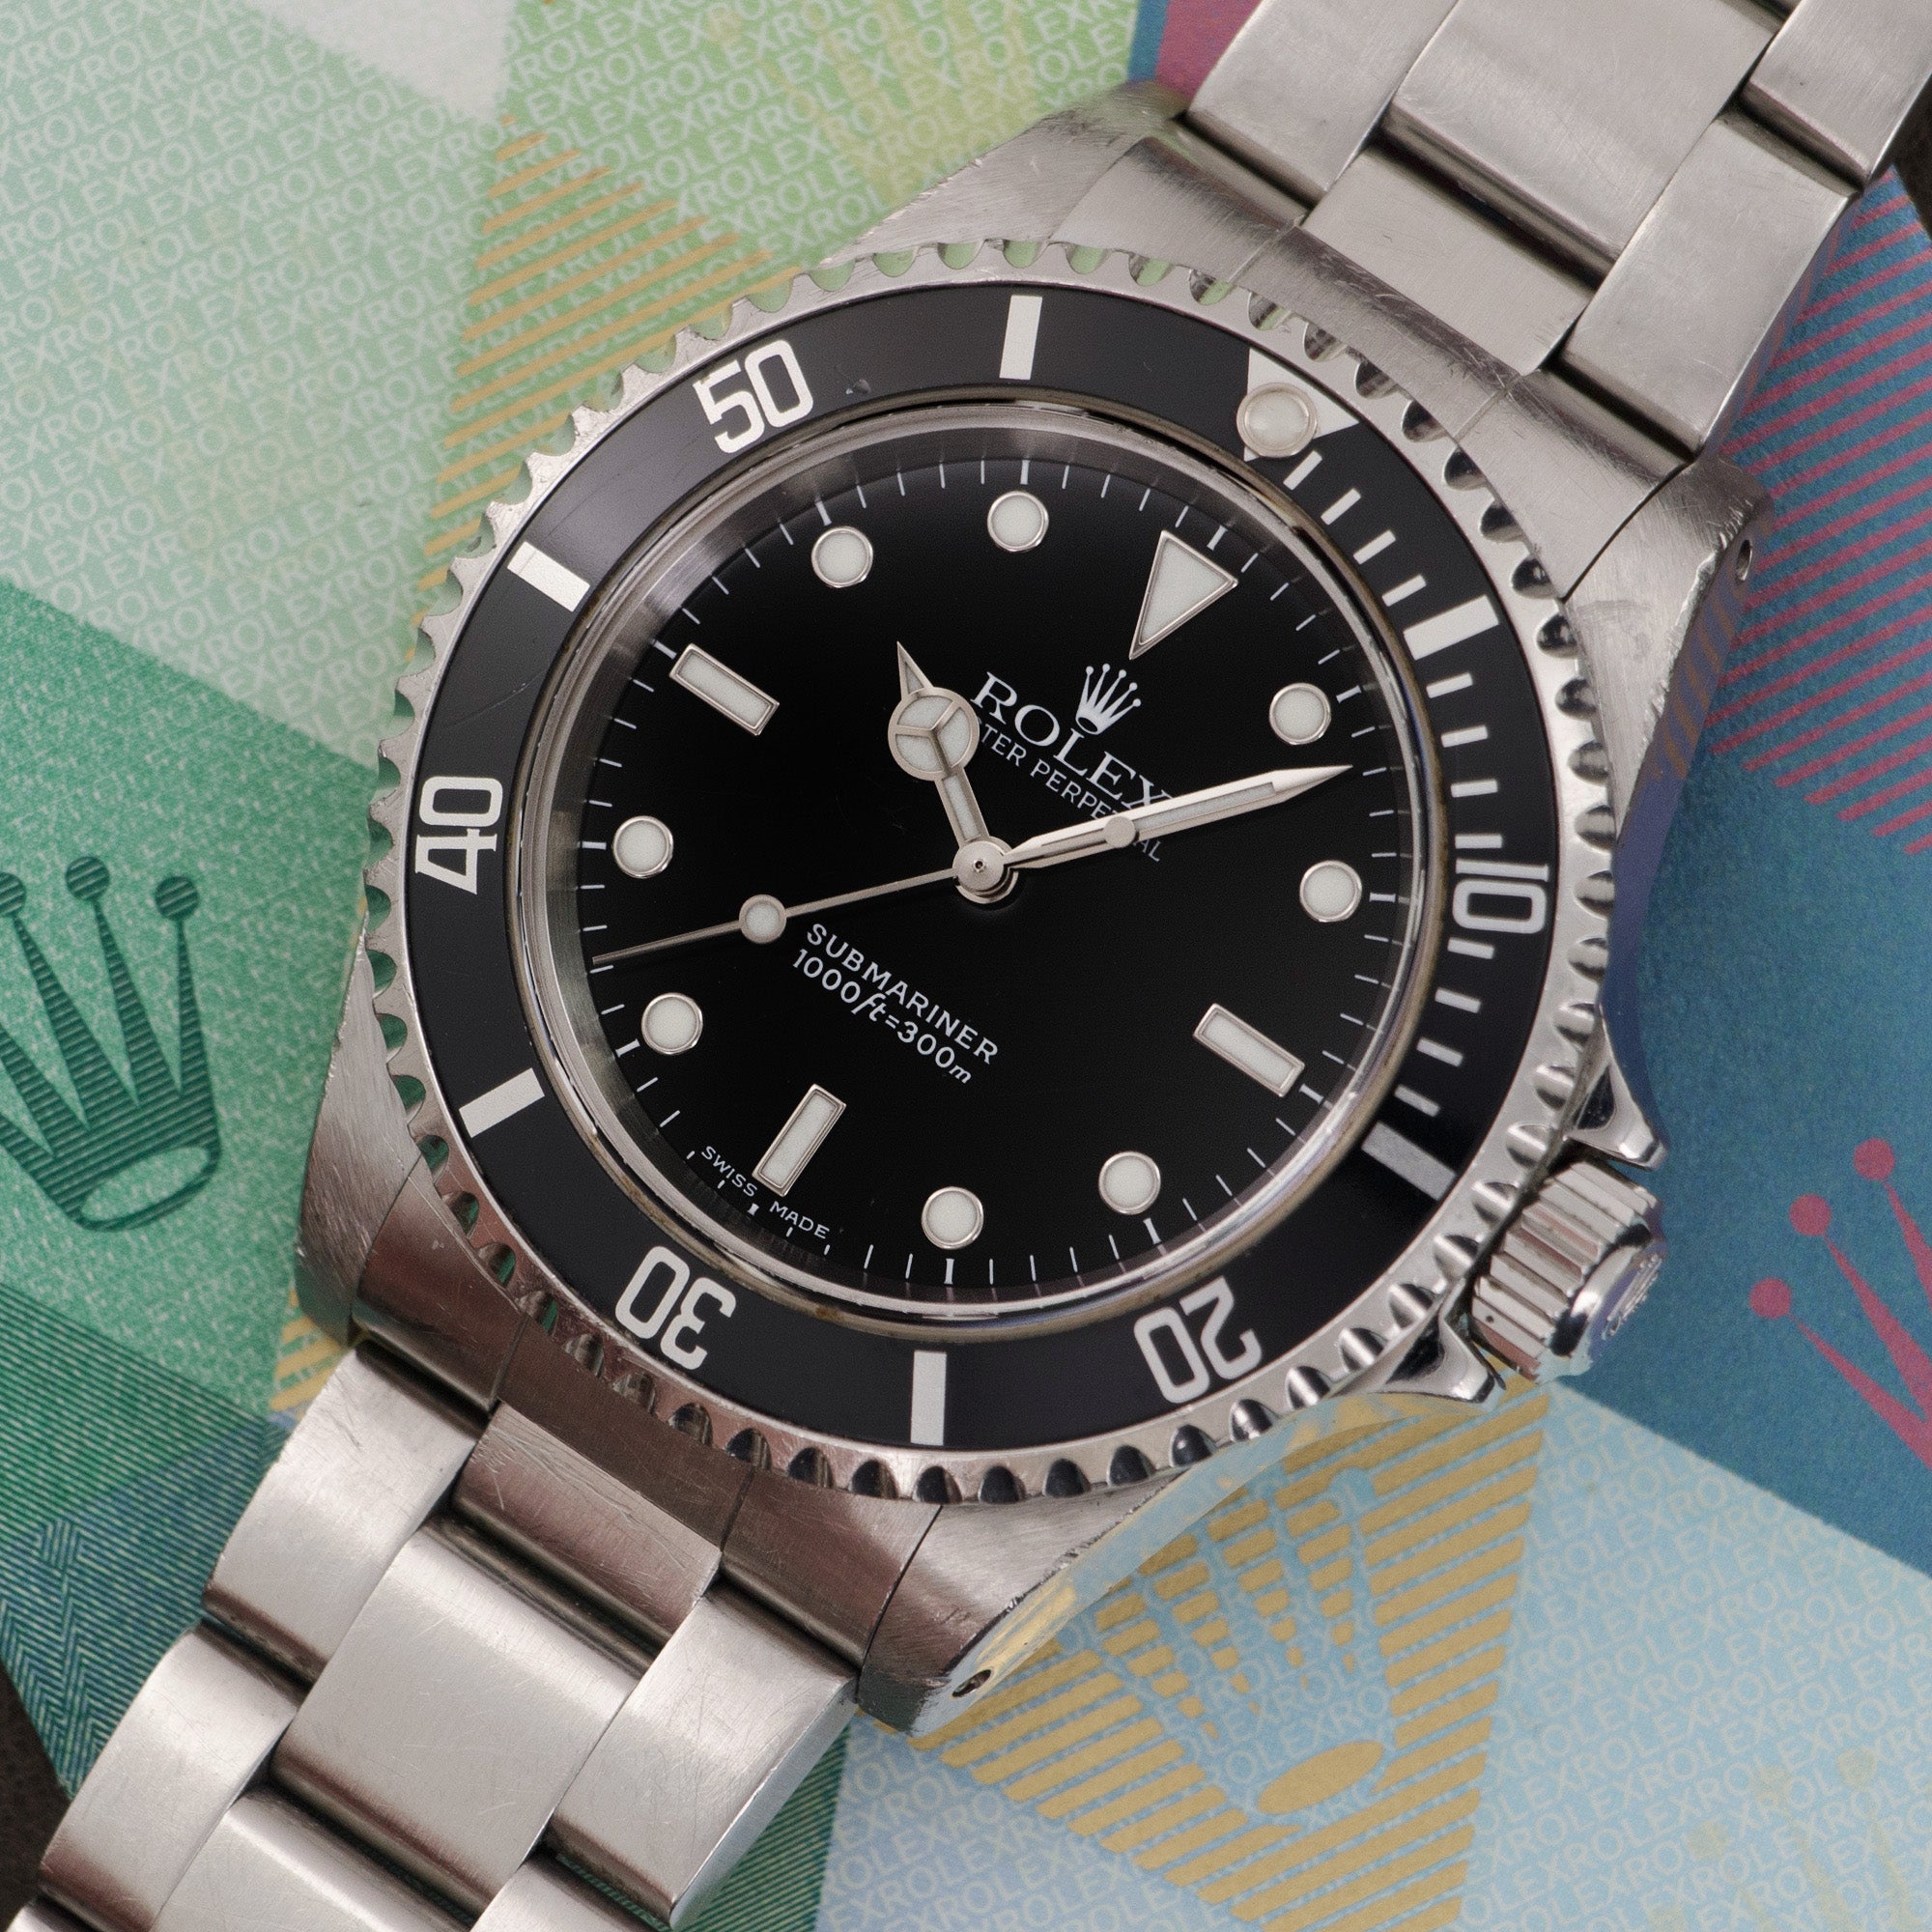 Rolex - Rolex Submariner Watch Ref. 14060 with Original Warranty Paper - The Keystone Watches